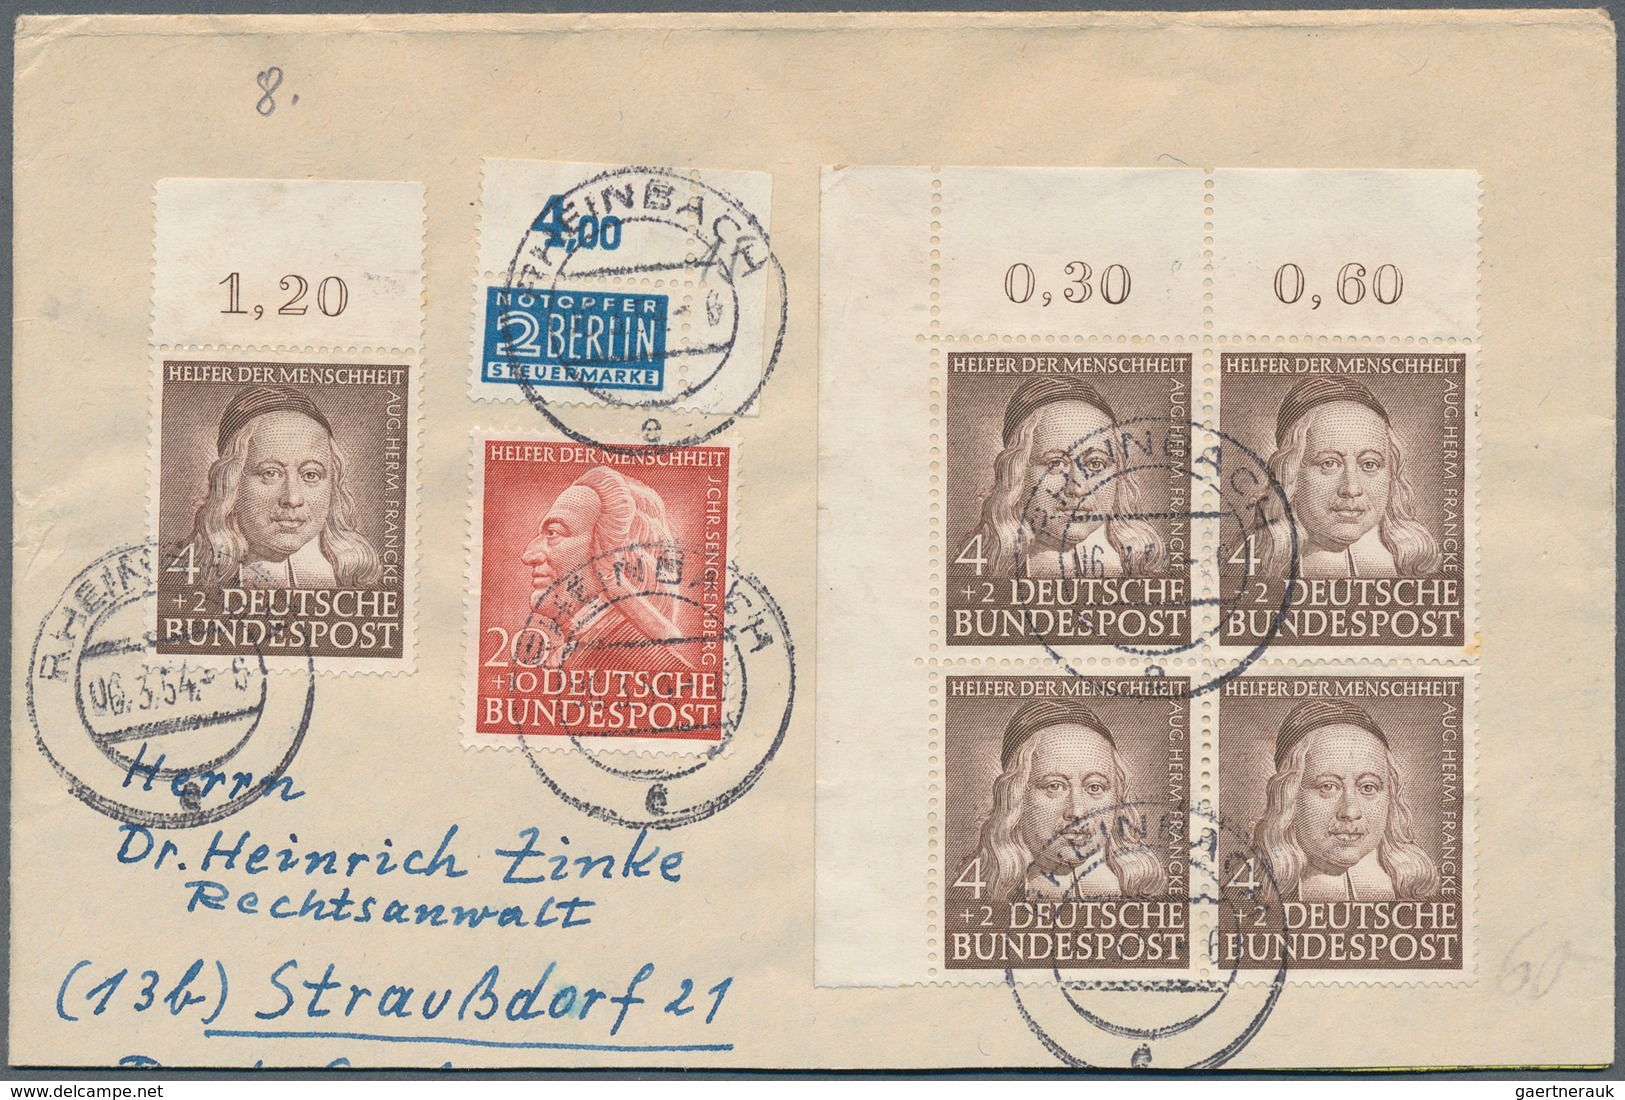 32413 Bundesrepublik und Berlin: 1948/1964, vielseitige Partie von ca. 90 Briefen, Karten und Ganzsachen,